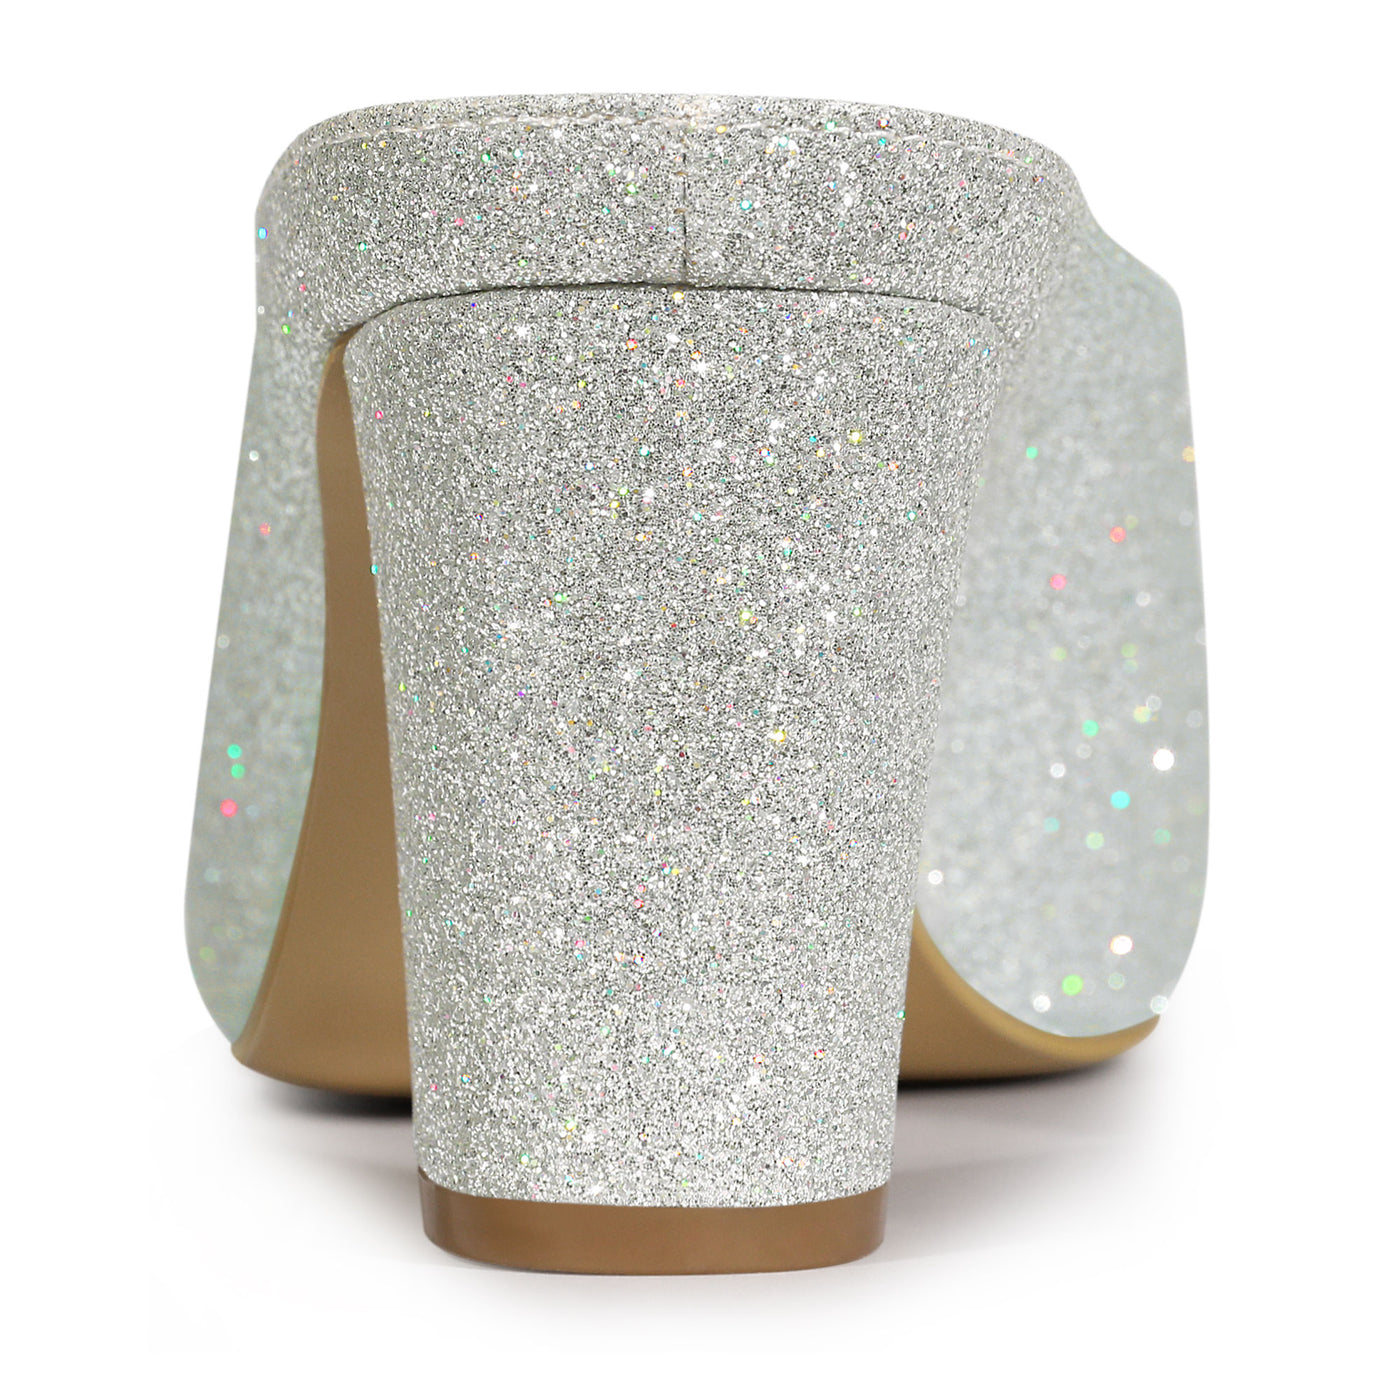 Allegra K Women's Glitter Pointed Toe Slip on Chunky Heels Slide Mules